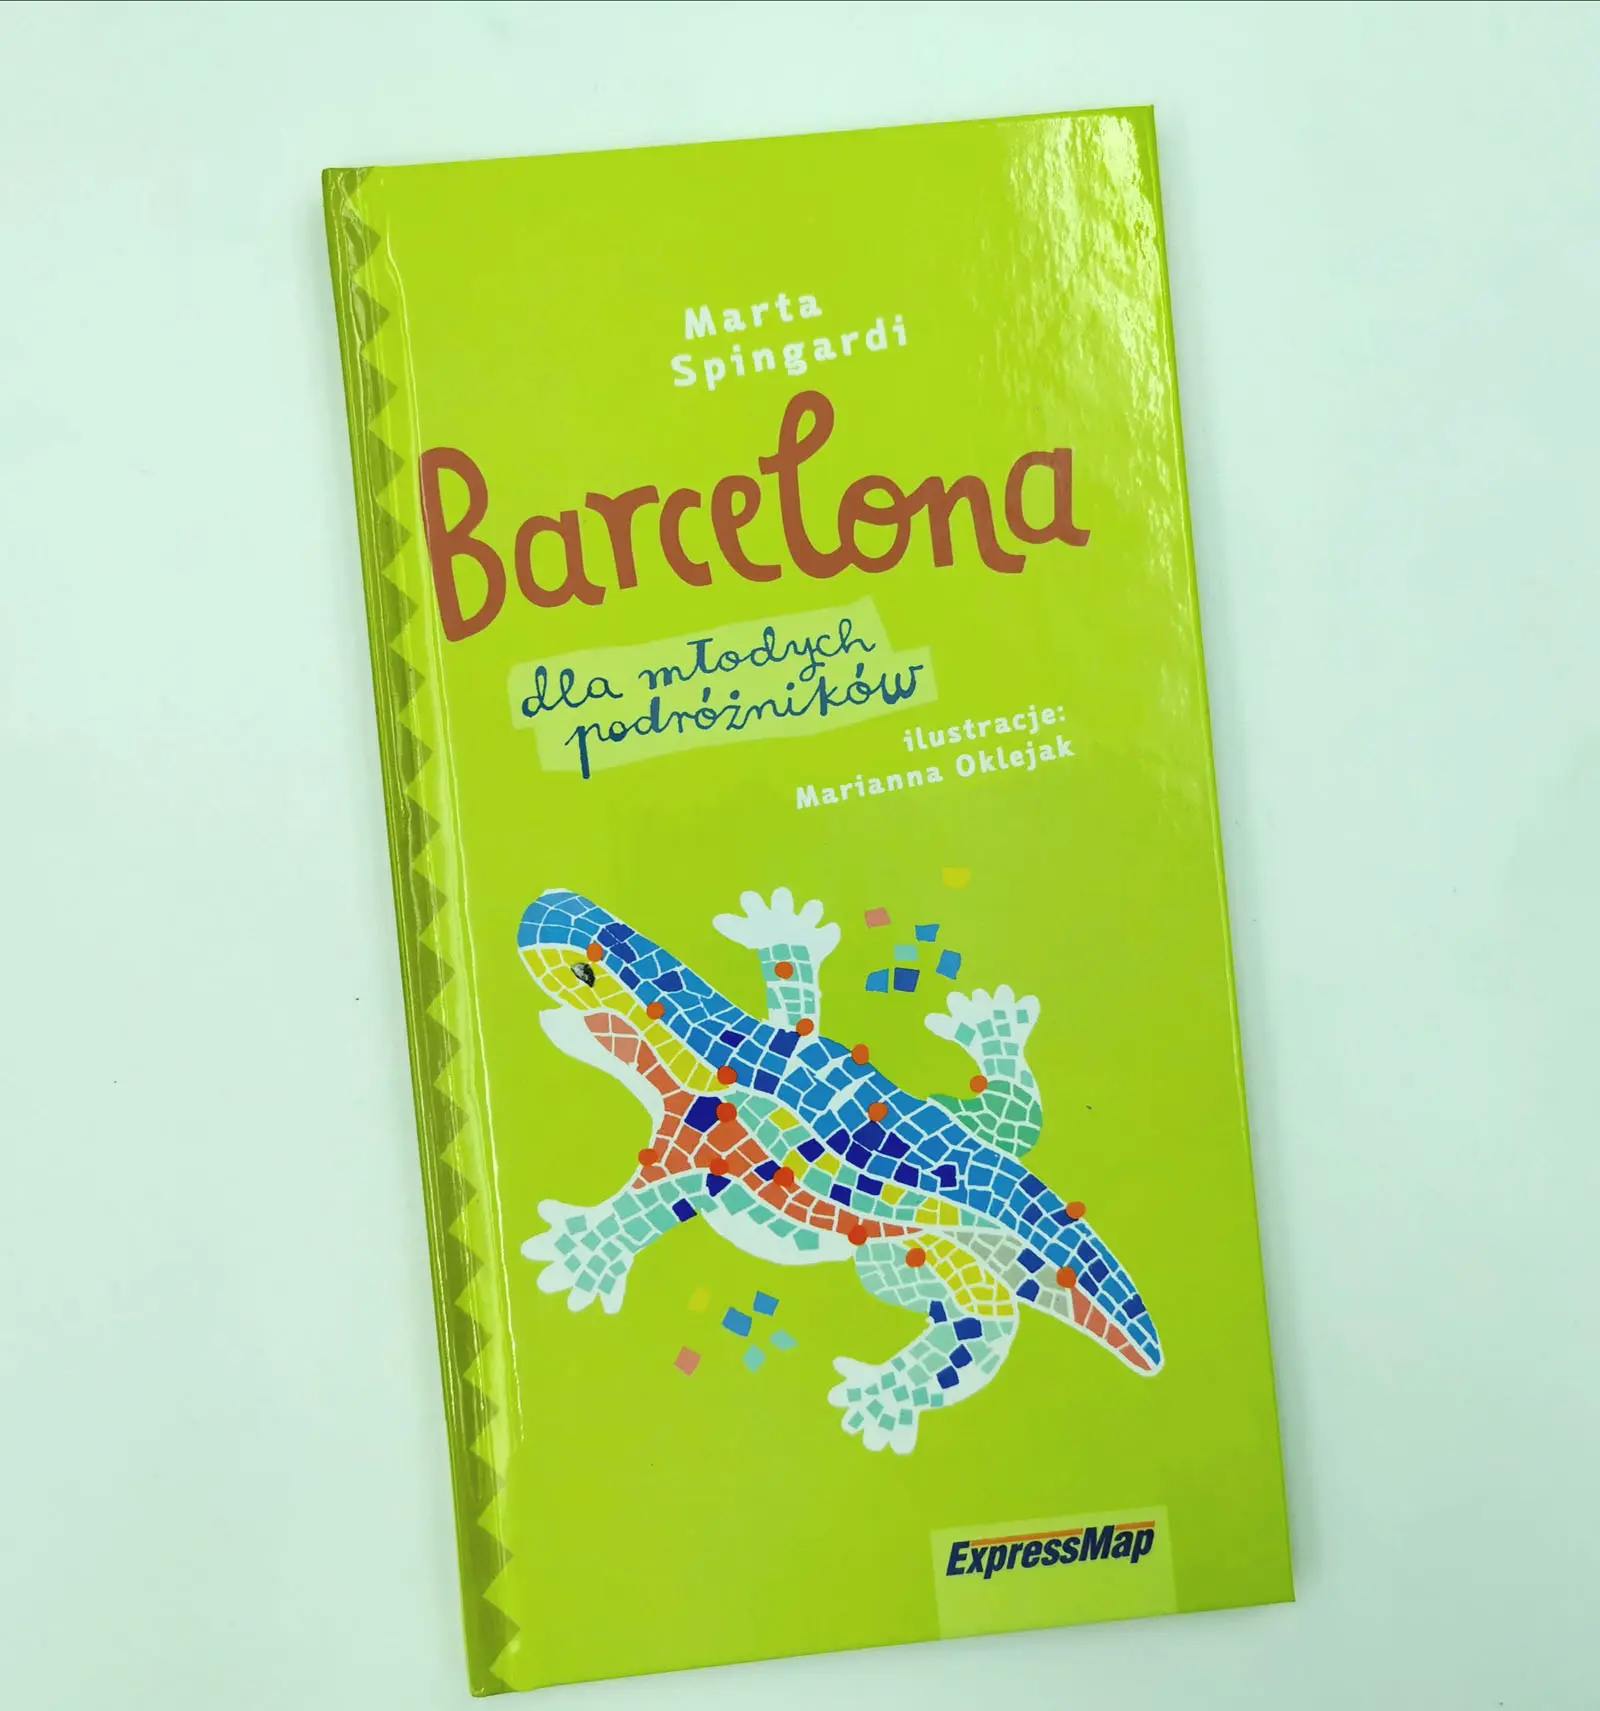 Barcelona dla młodych podróżników